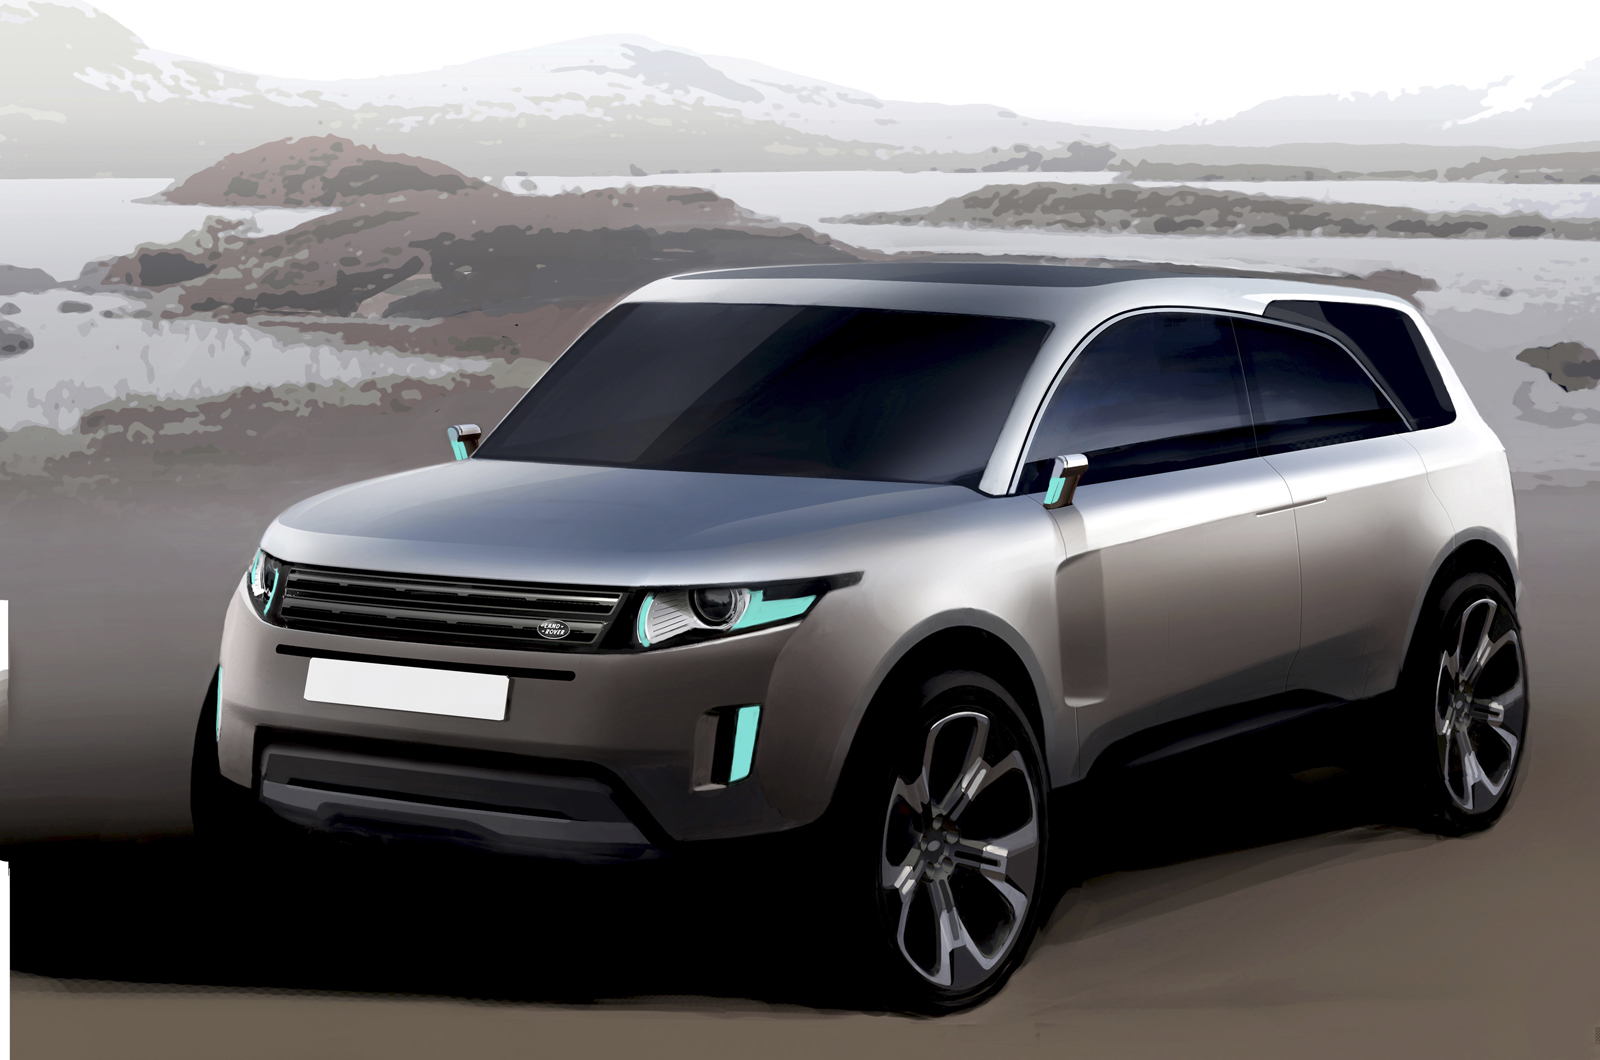 We design a Land Rover for 2014 | Autocar